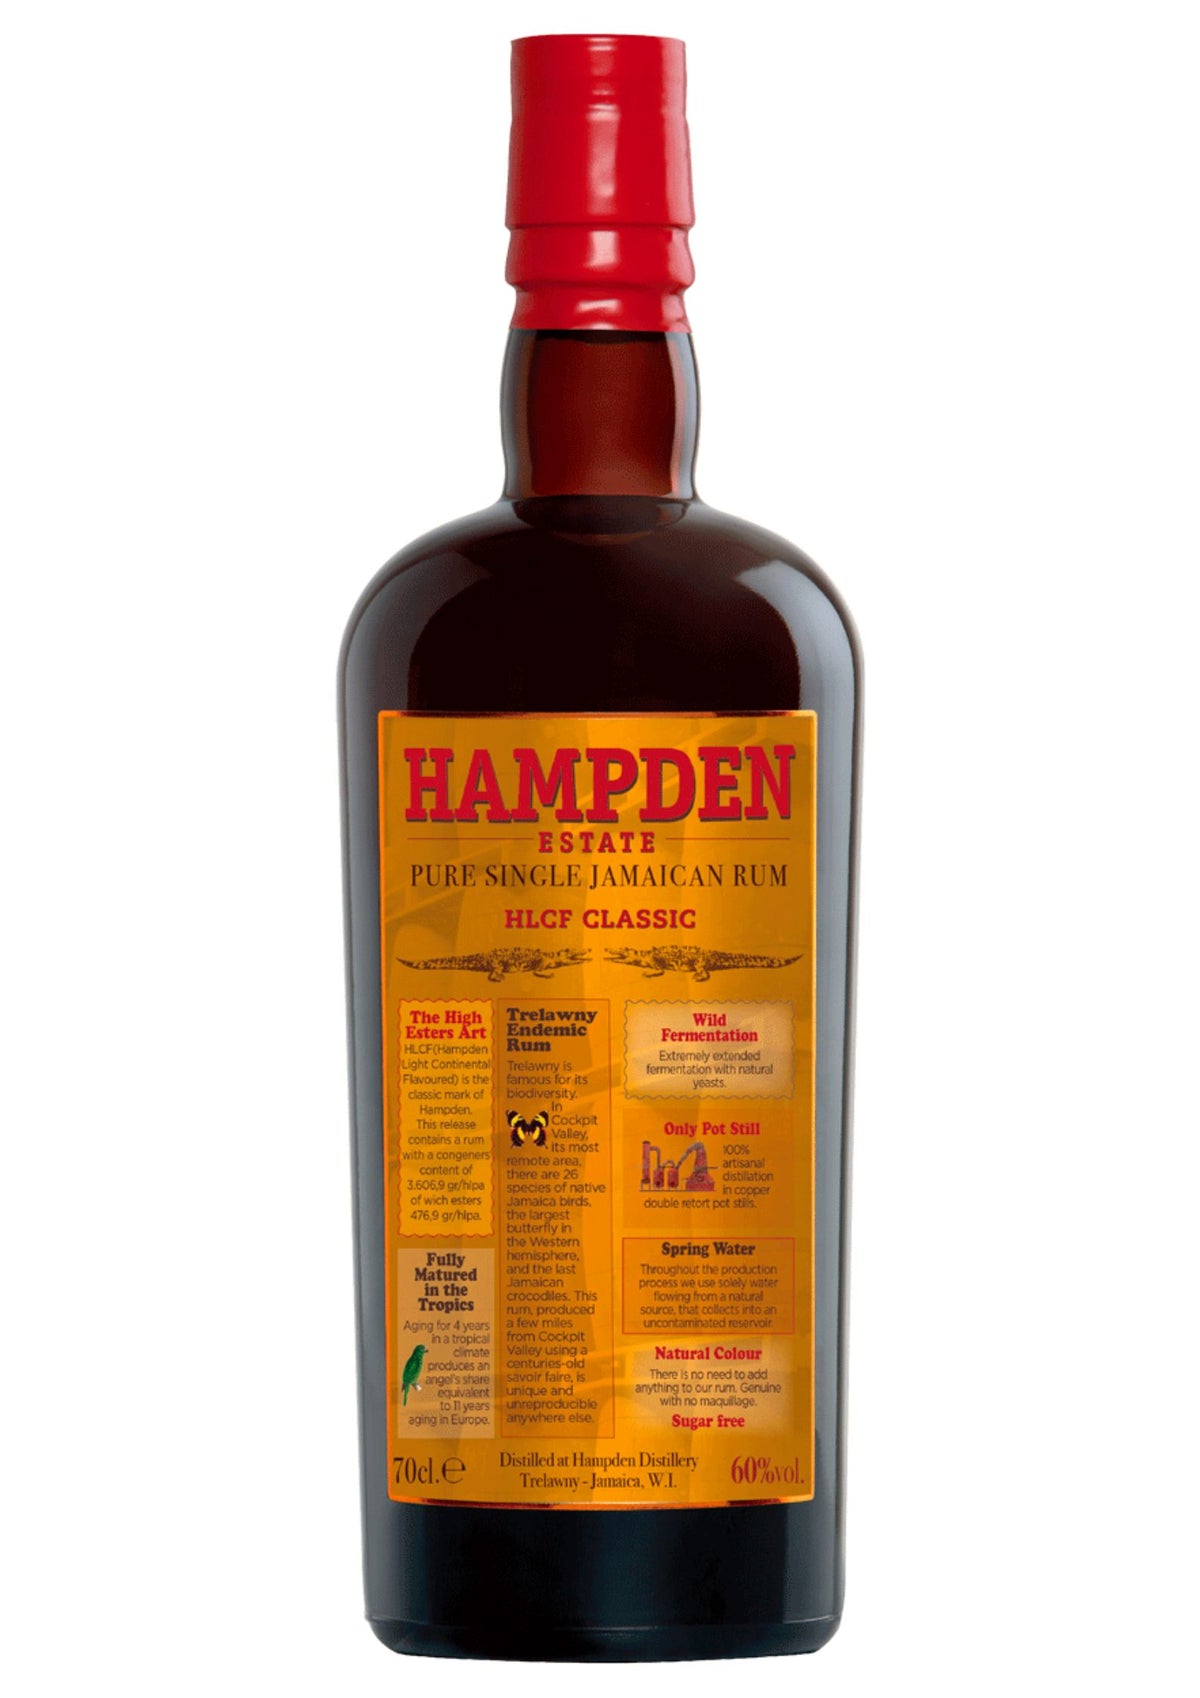 Hampden Estate HLCF Classic Rum, Jamaica, 60%